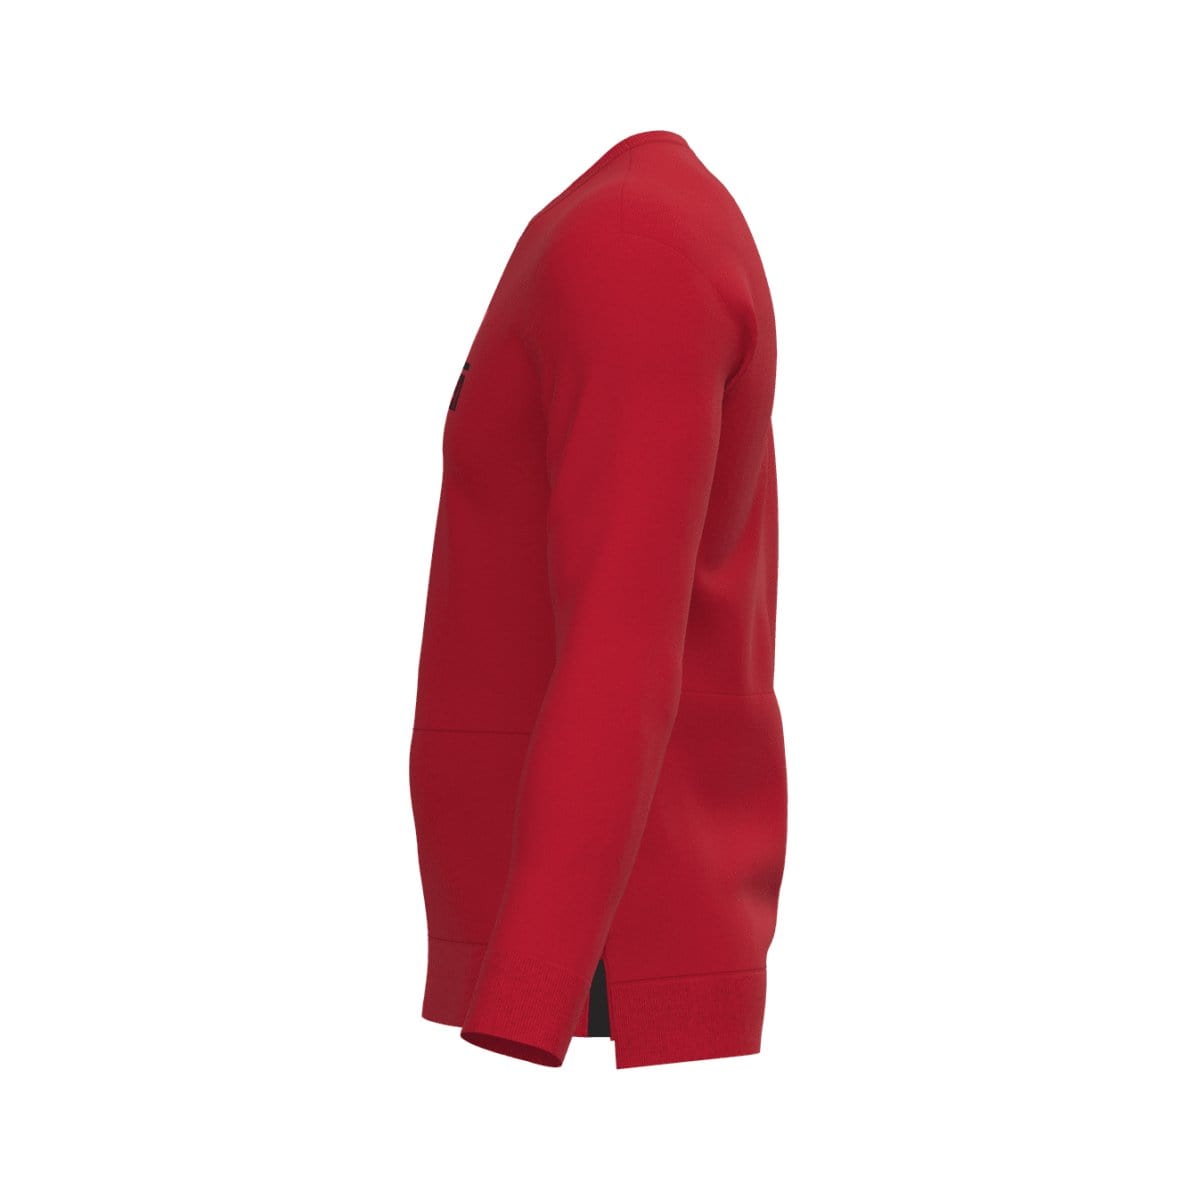 J.Hinton Collections sweatshirt Men's Bart Inspired Marksmenari- Fleece Sweatsuit